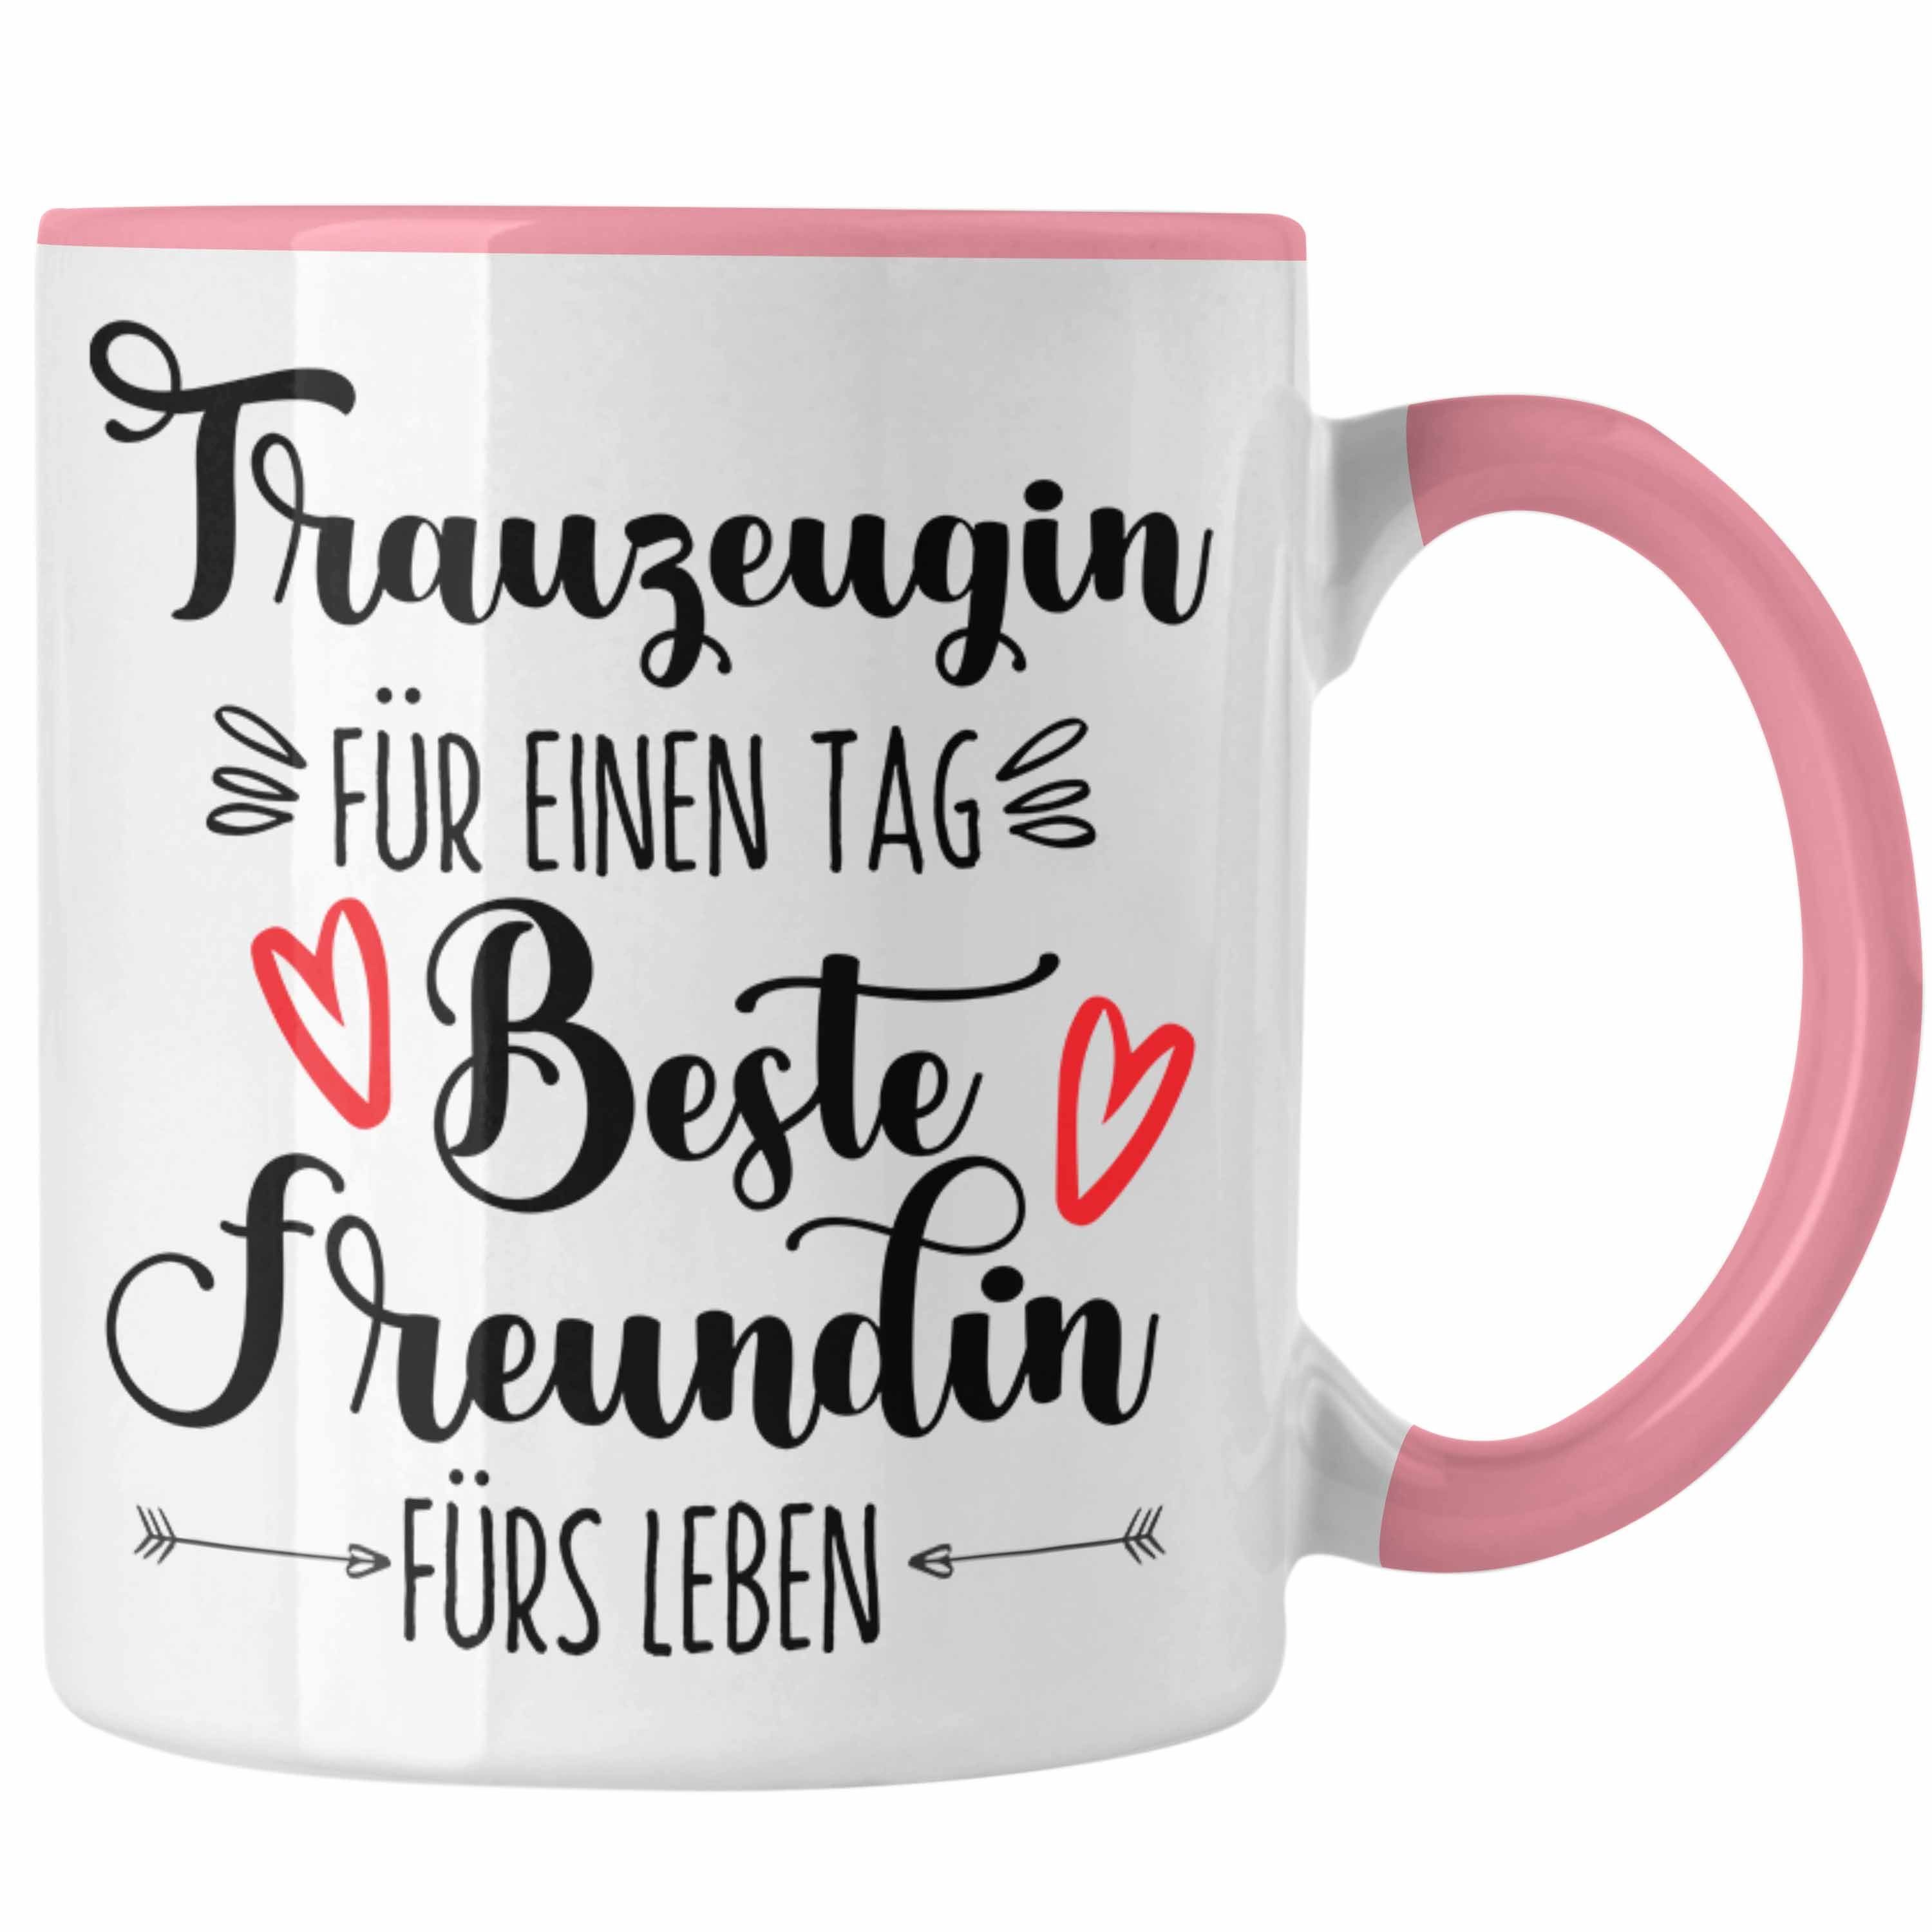 Beste Freundin Trauzeugi Trauzeugin Trendation Überraschung Geschenk Tasse Tasse Beste Rosa